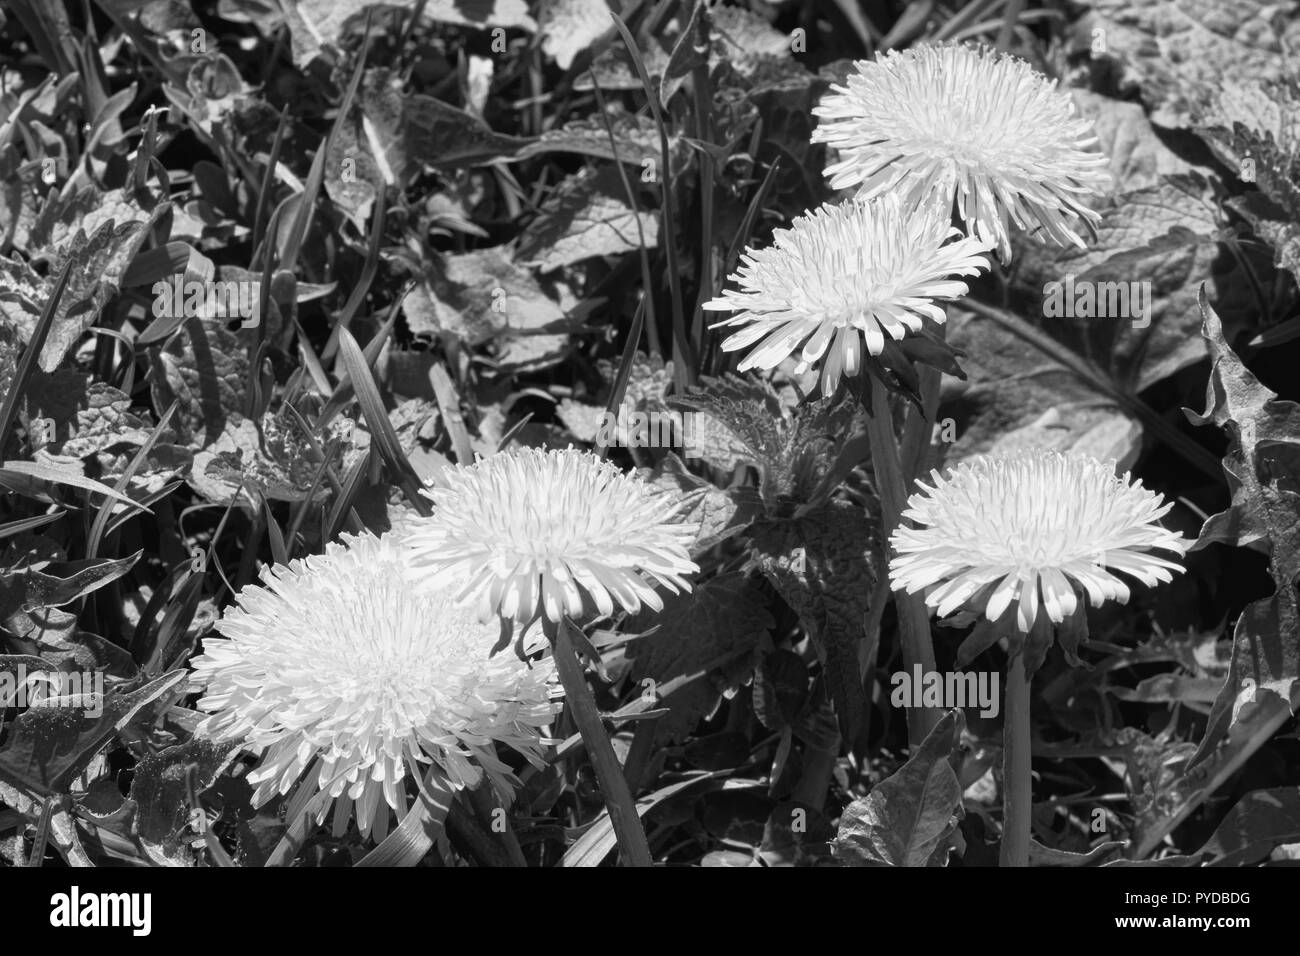 Foto von einer blühenden Löwenzahn, die Gattung der mehrjährige krautige Pflanzen der Familie der Astropeus oder der Complexaceae (Asteraceae) Stockfoto